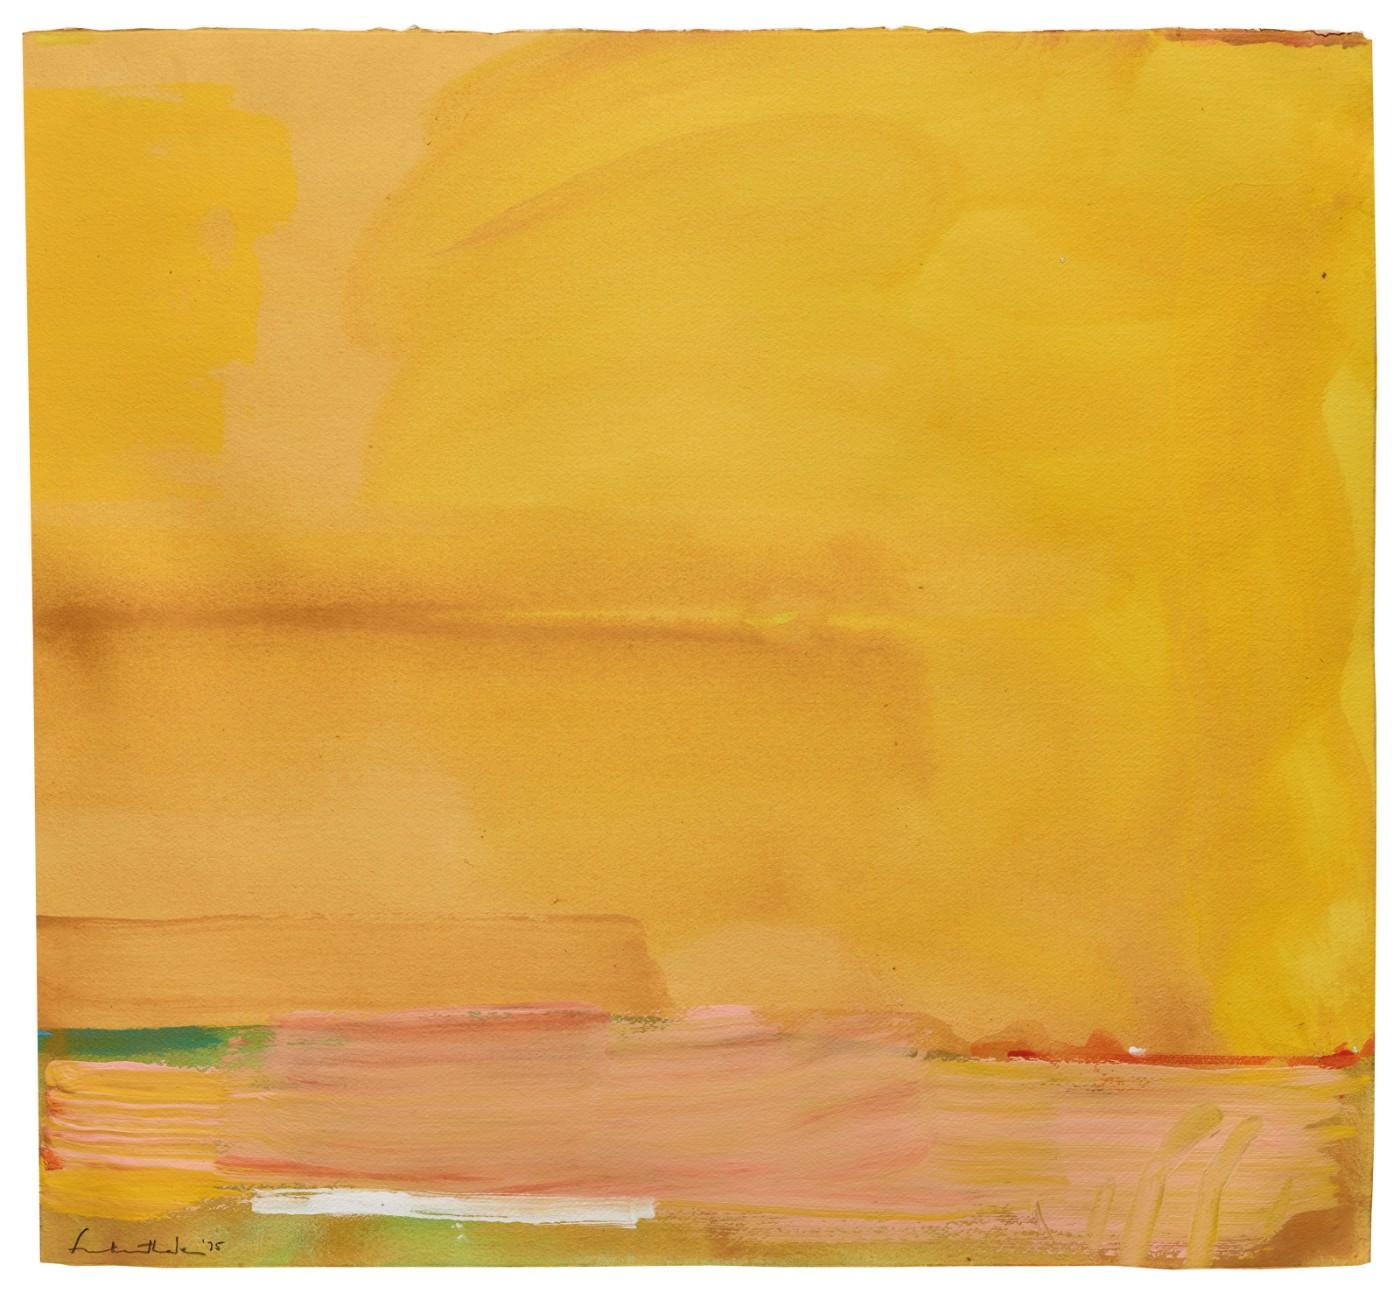 Helen Frankenthaler (1928-2011), Untitled, 1975